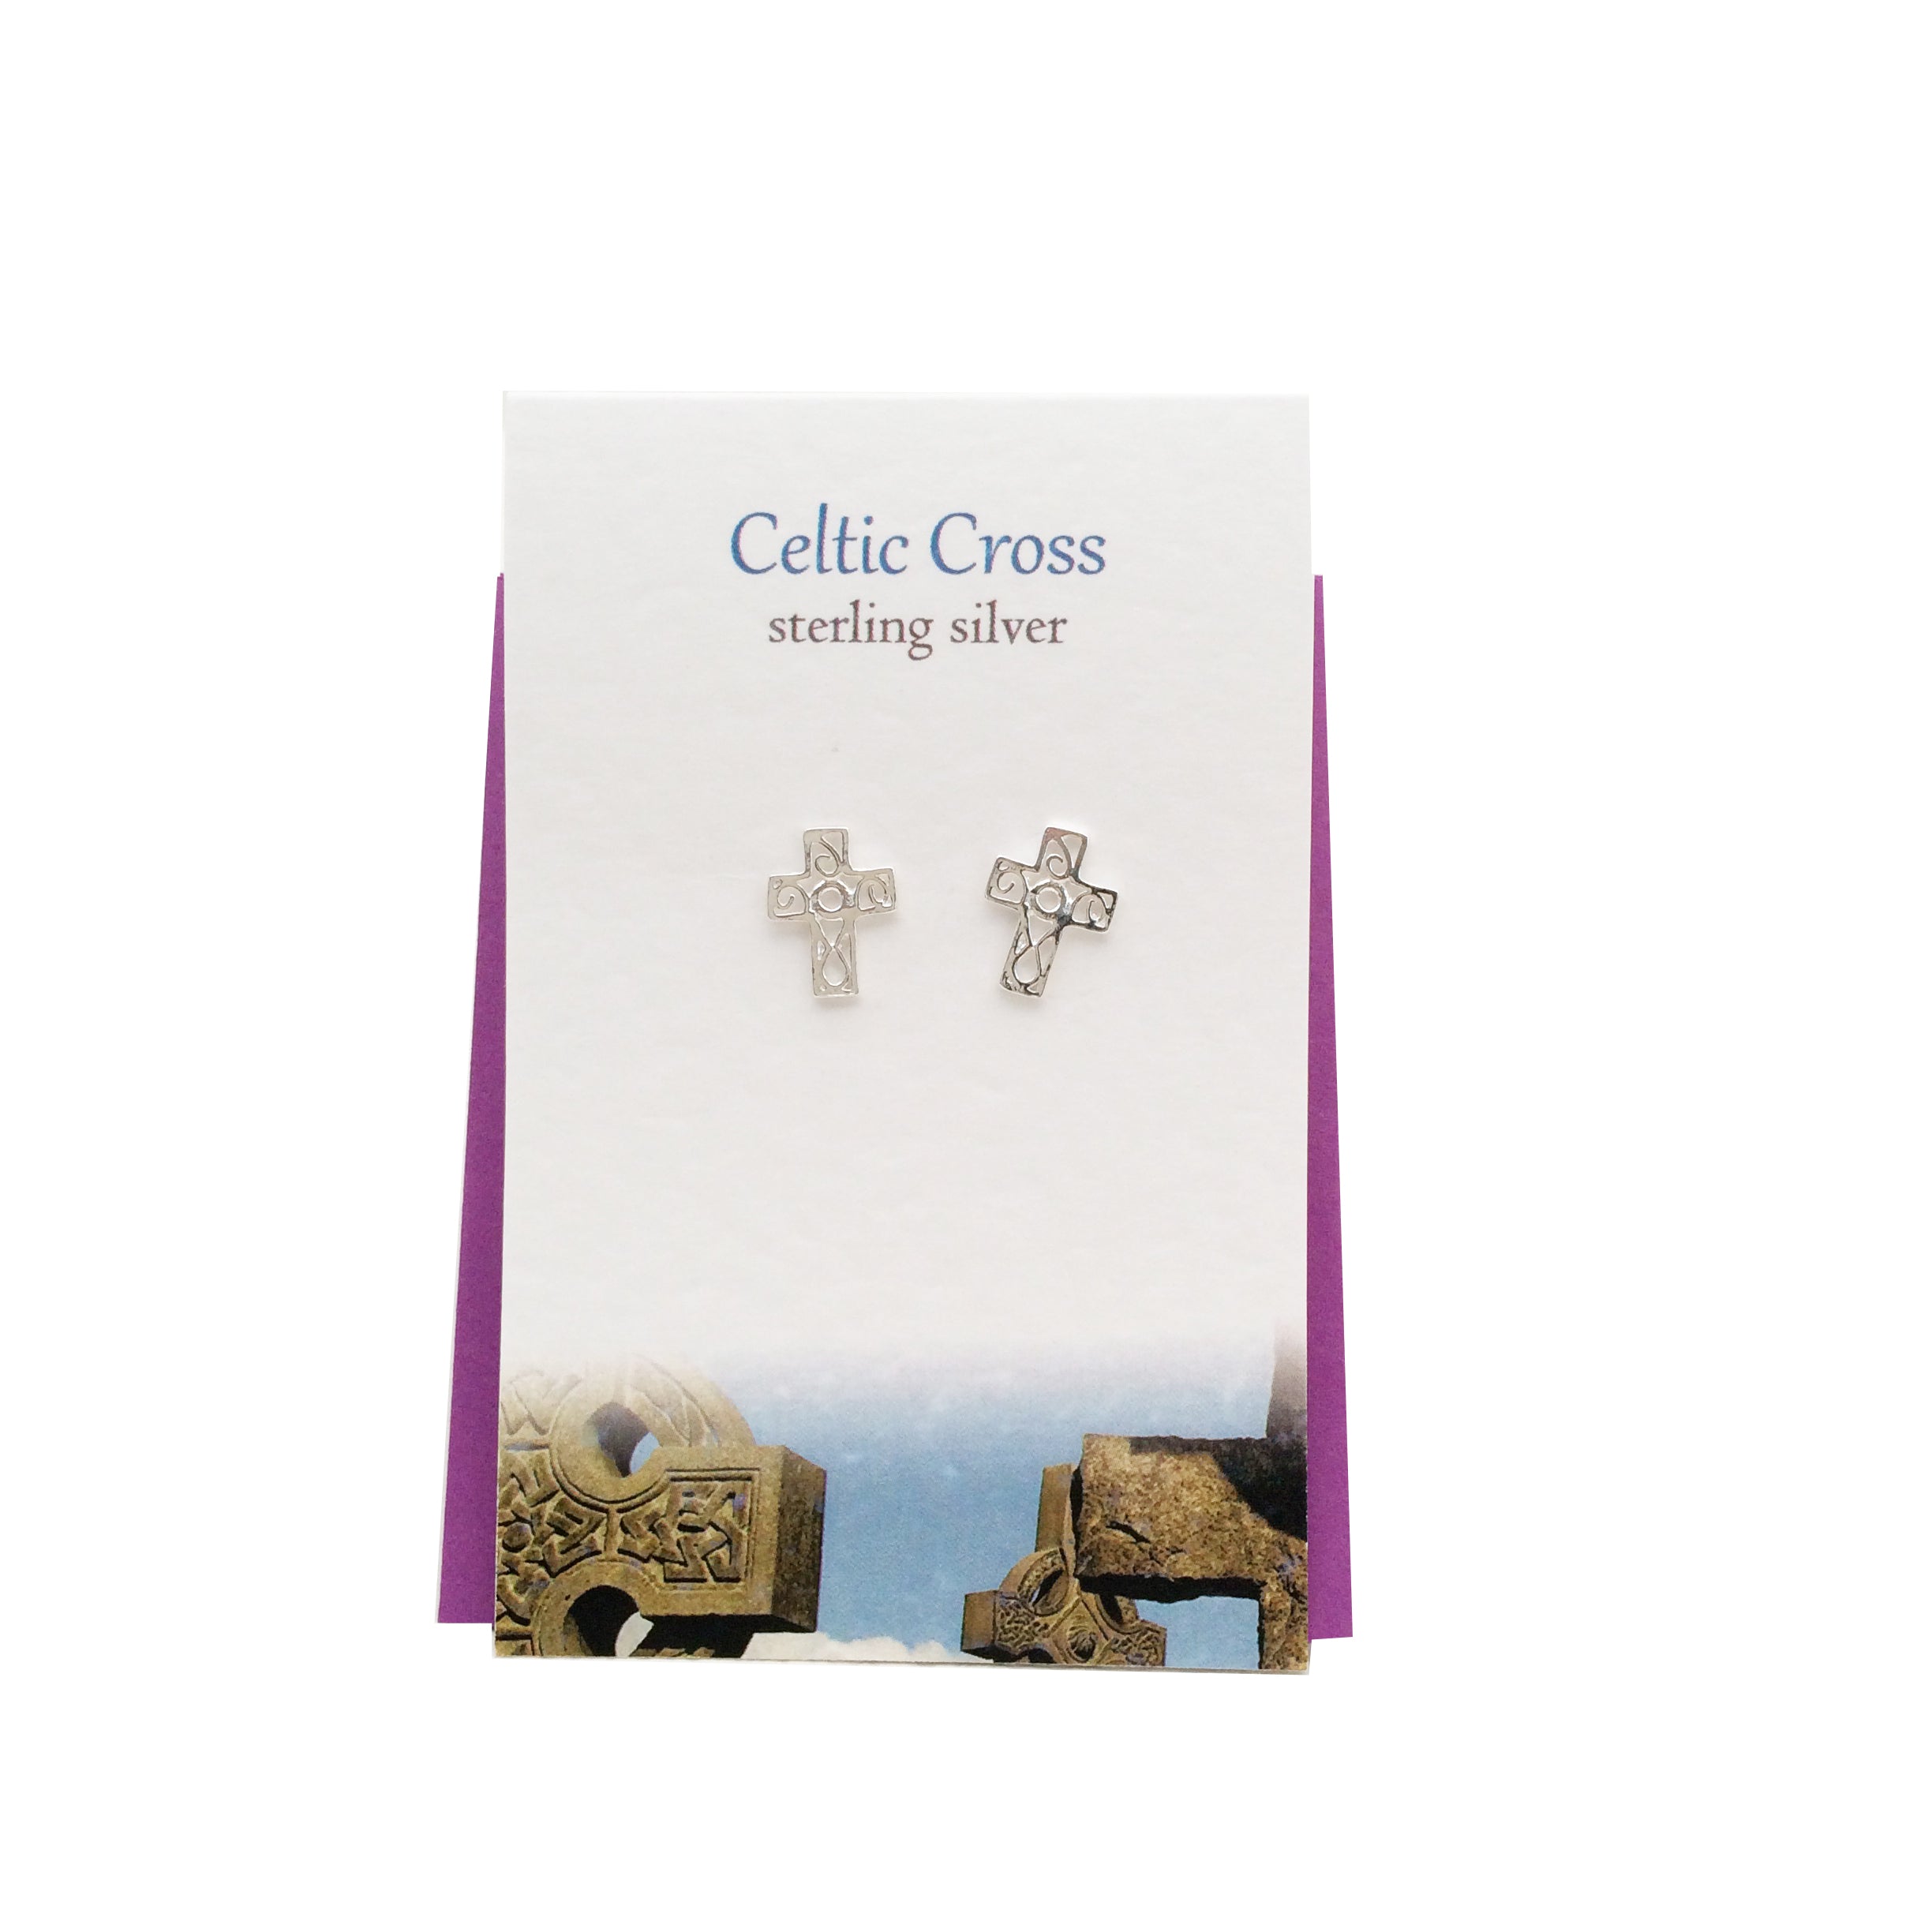 Celtic Cross sterling silver stud earrings| The Silver Studio Scotland